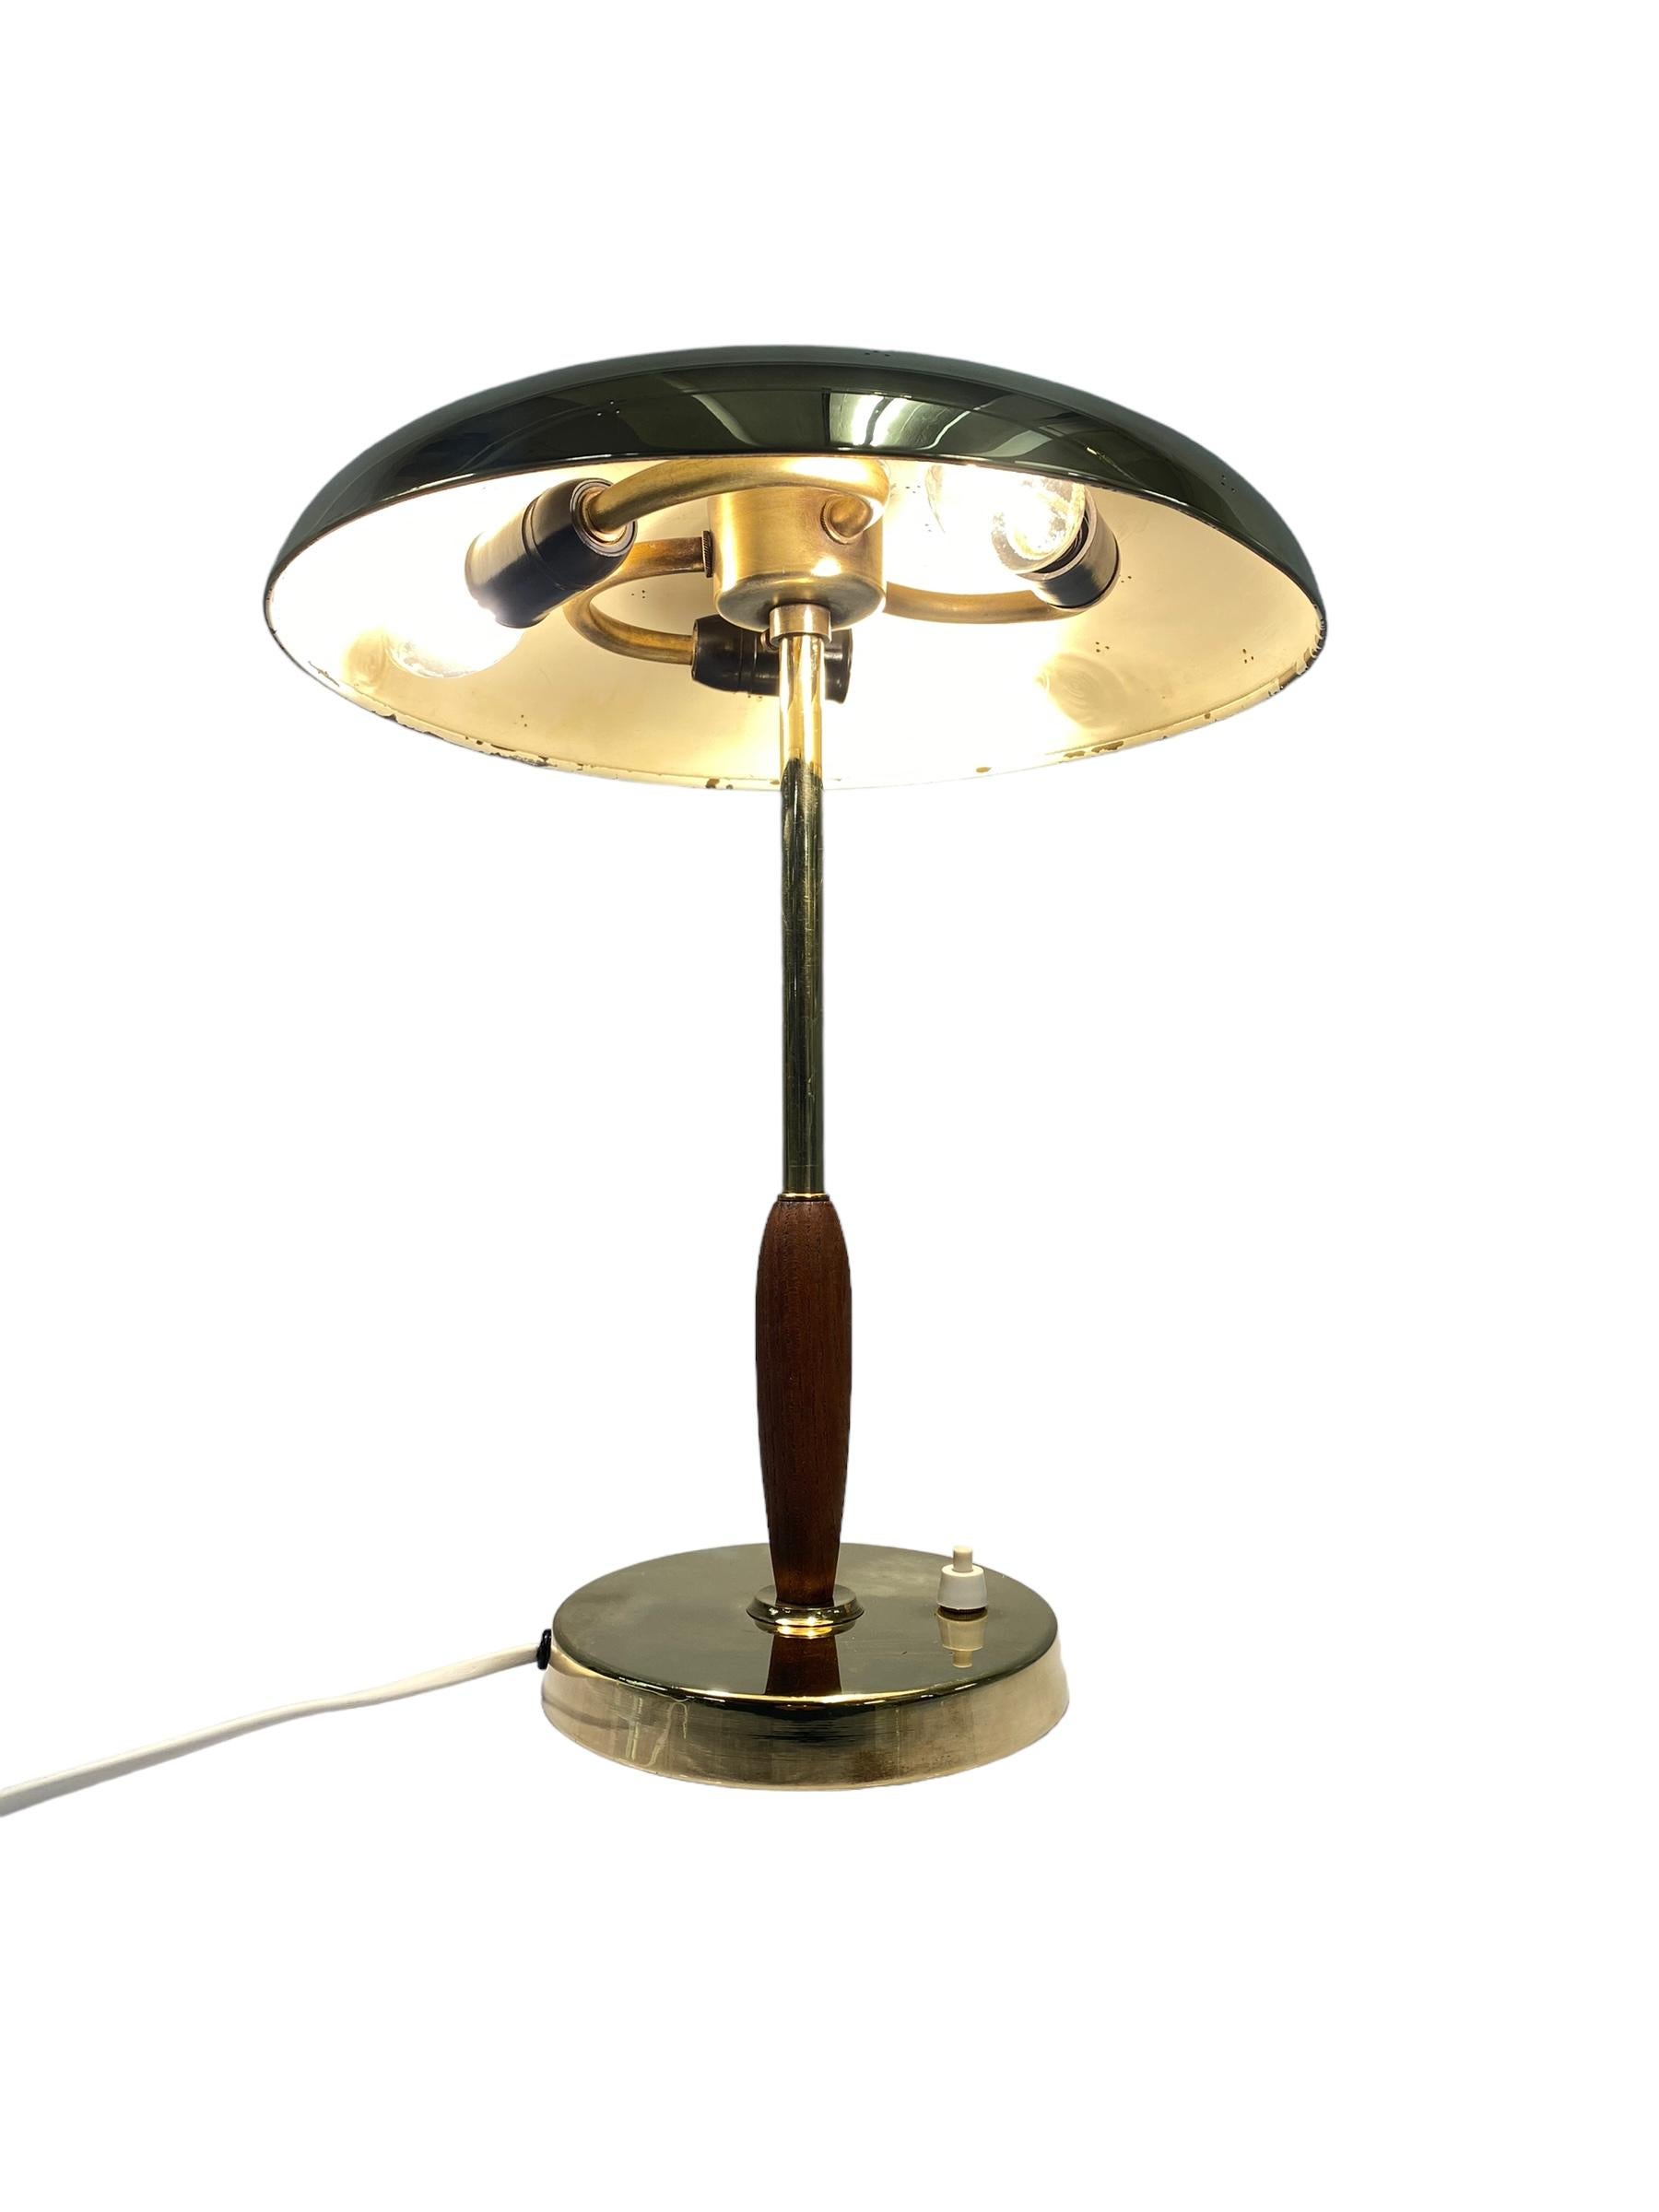 Teak Table Lamp Model. 407024, Pohjoismainen Sähkö Oy 1950s For Sale